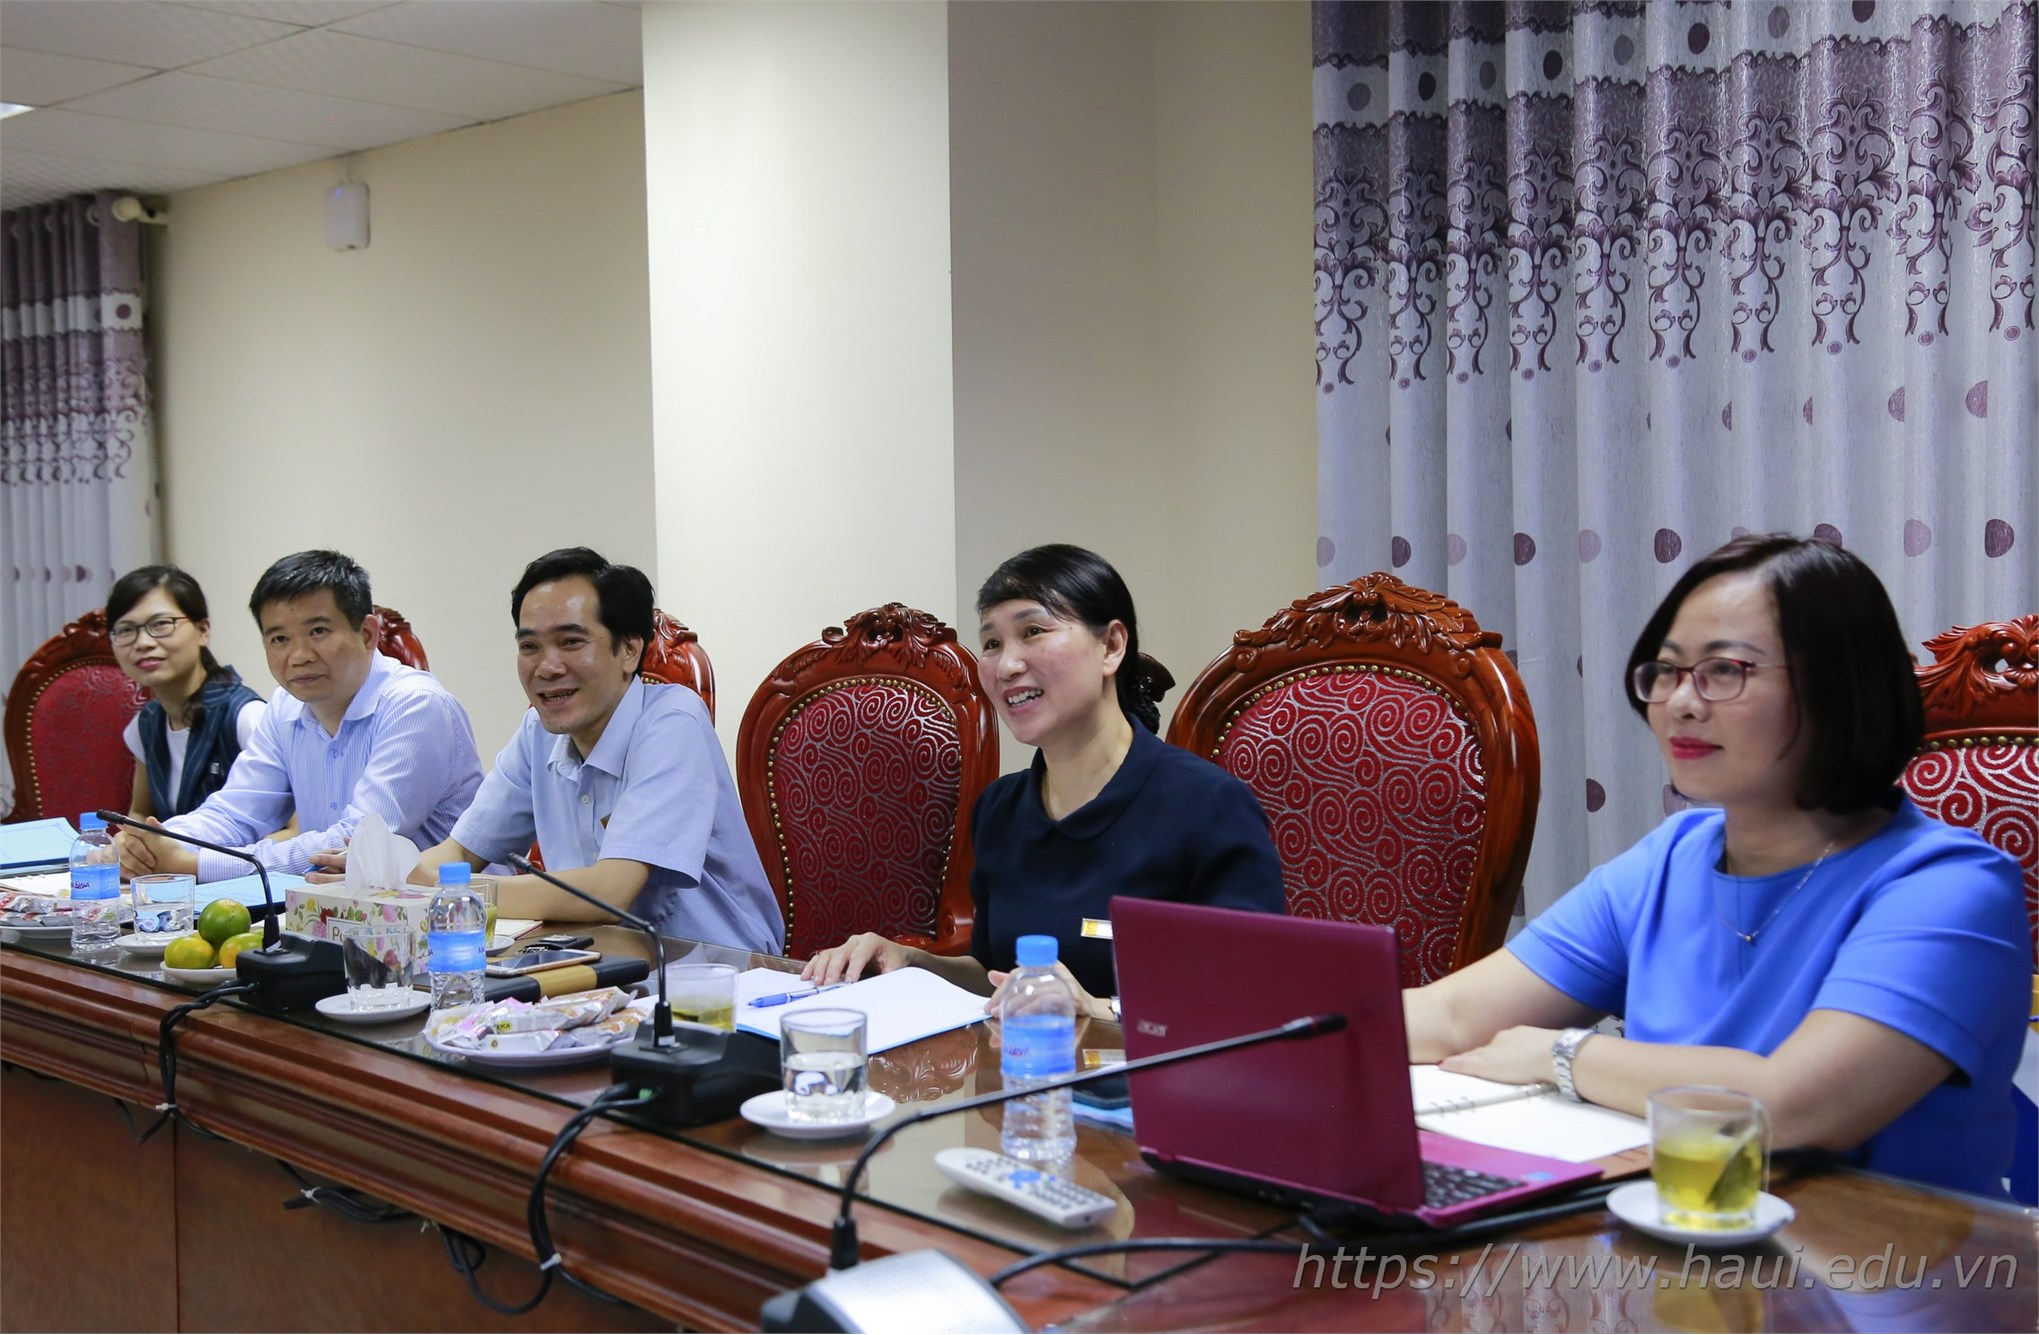 Đại học Công nghiệp Hà Nội mở ngành đào tạo cử nhân Tiếng Việt và Văn hóa Việt Nam